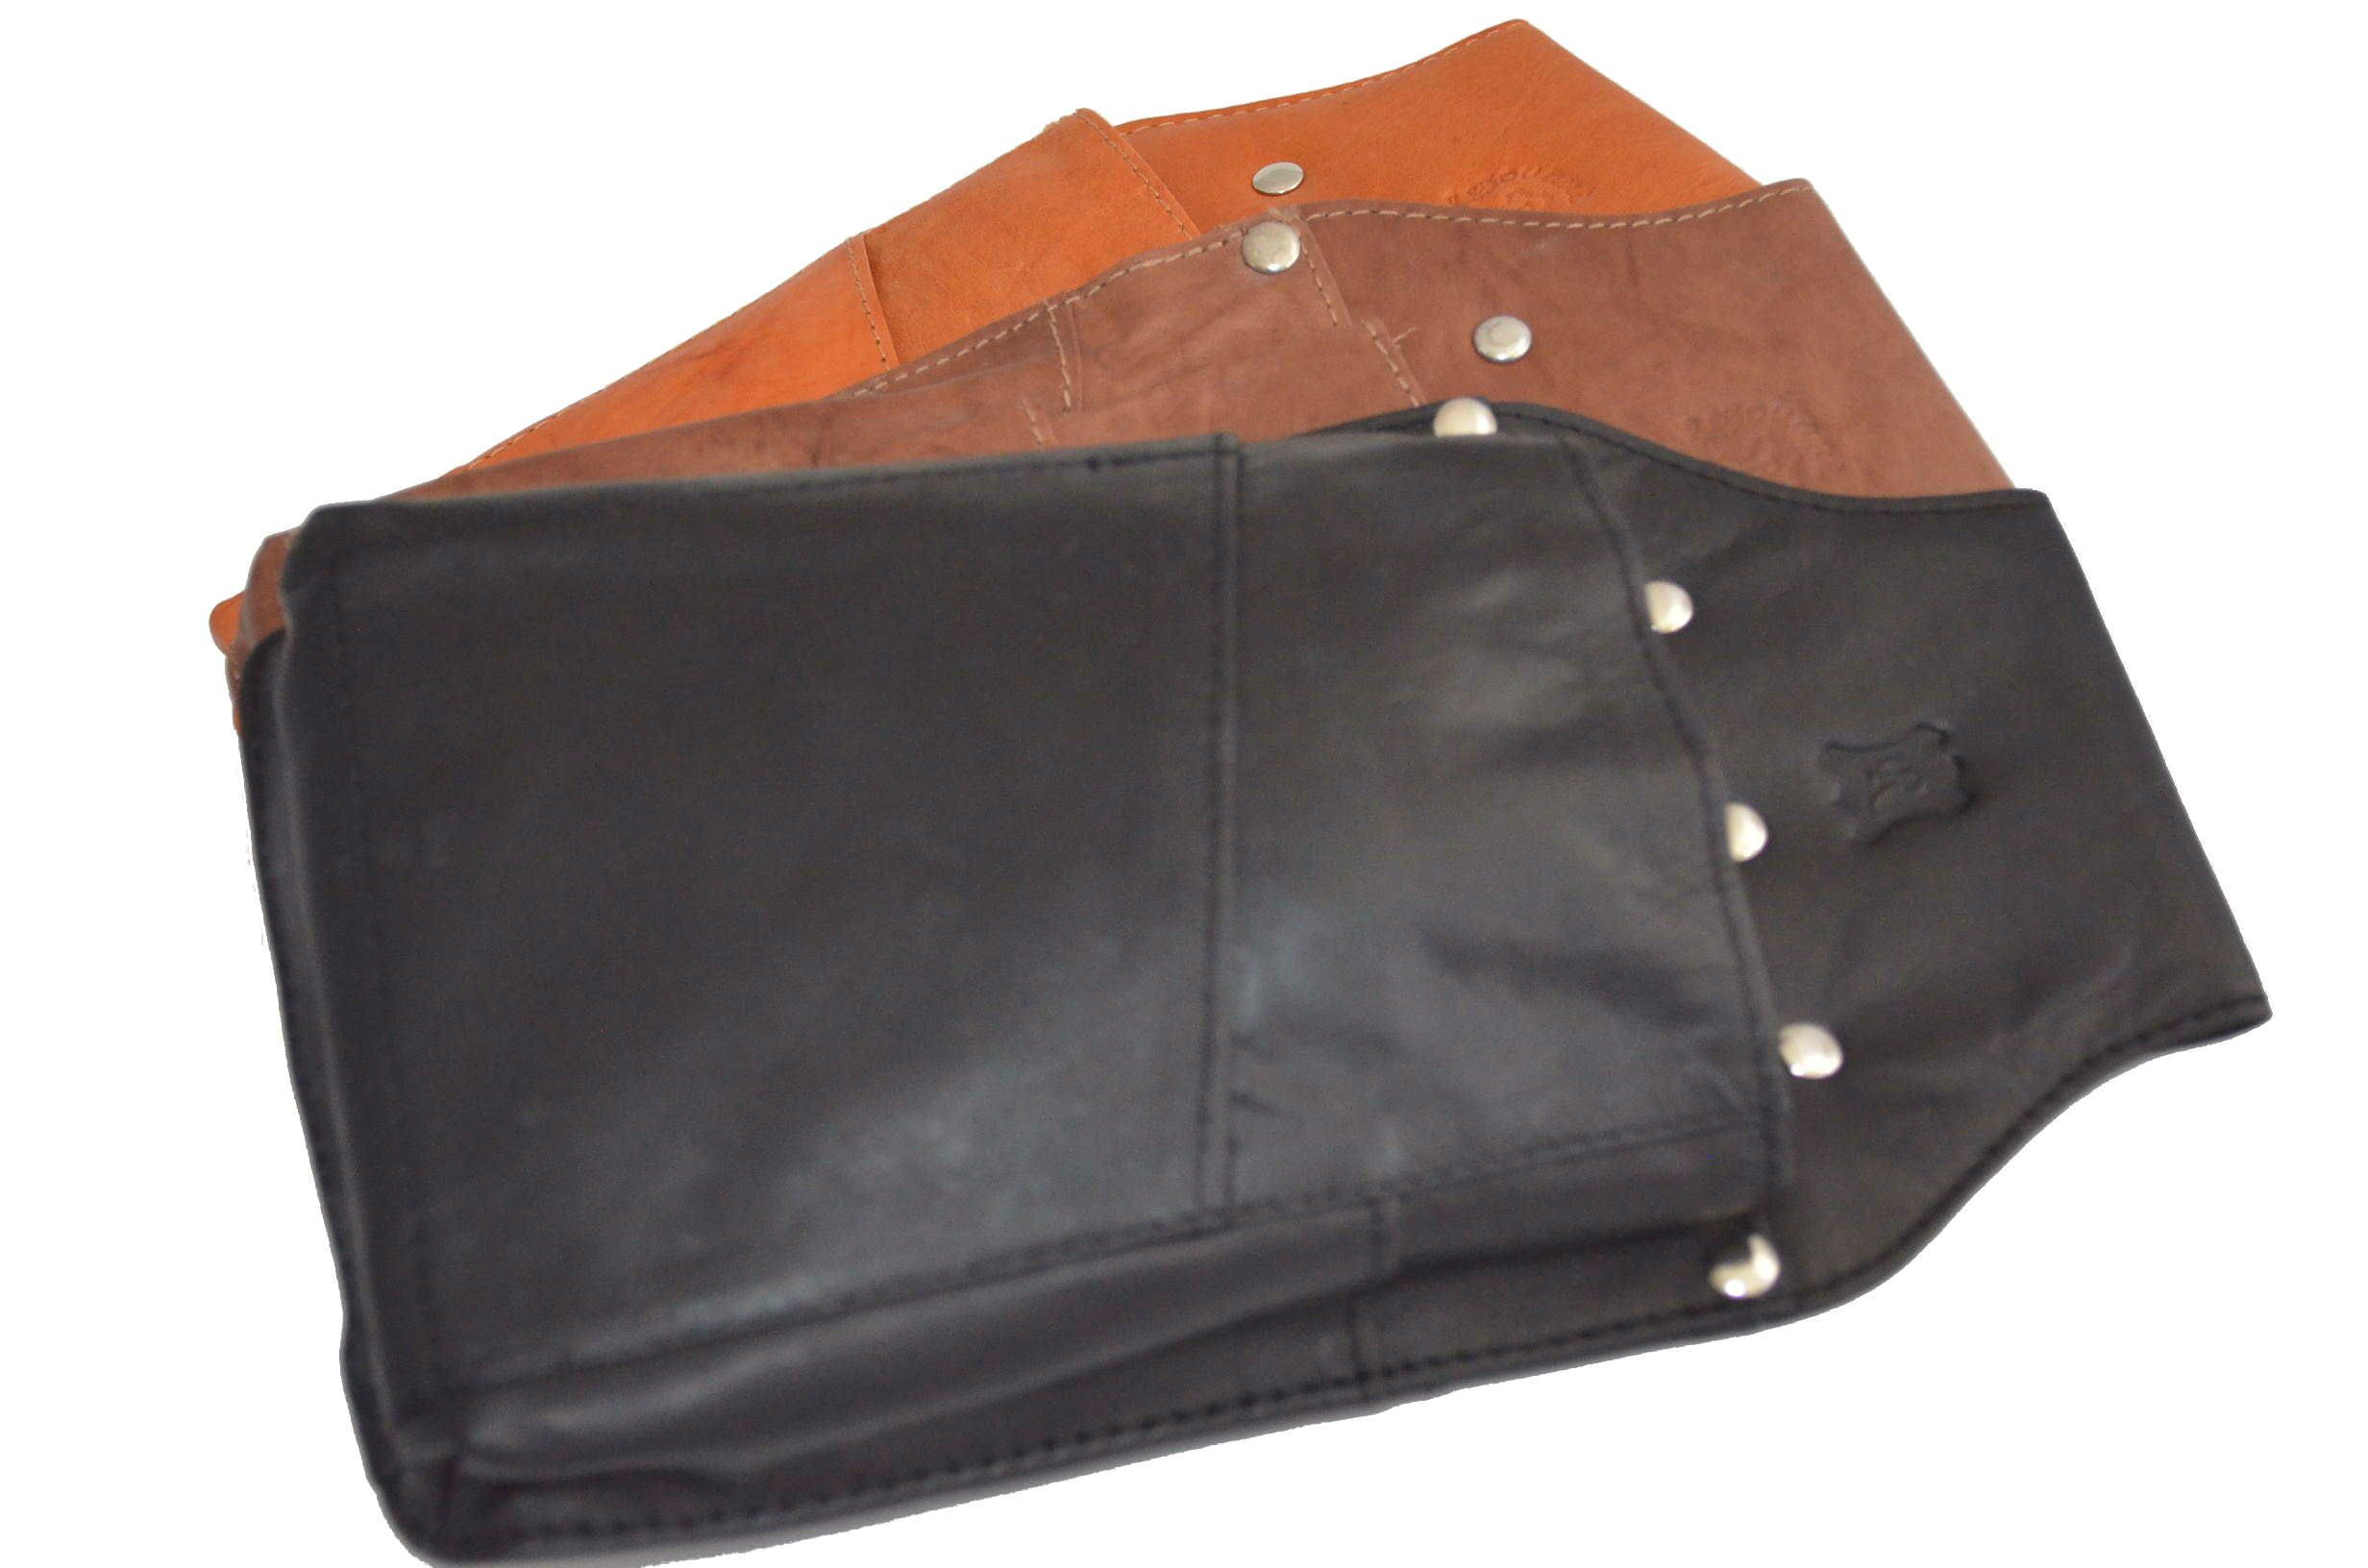 Leather Pocket for waiter wallet